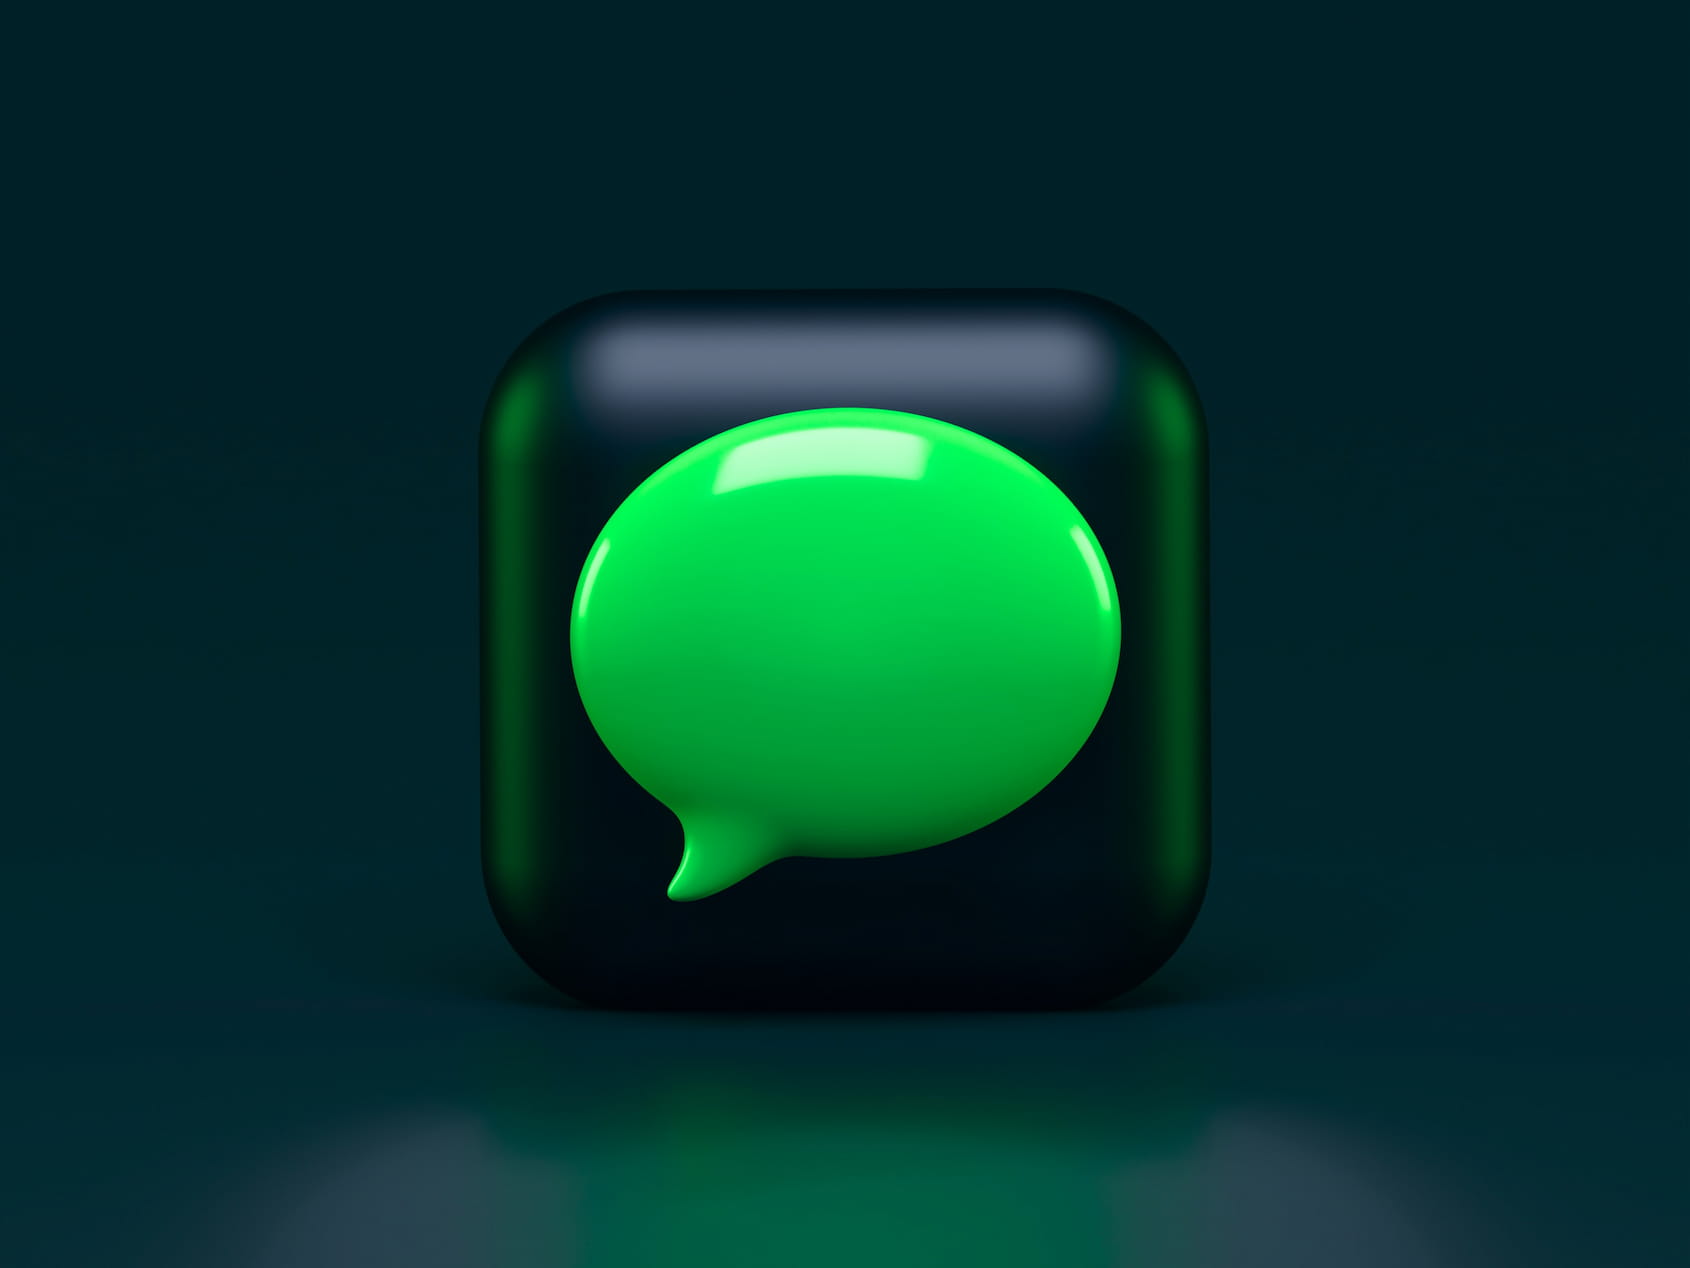 Instant messaging app